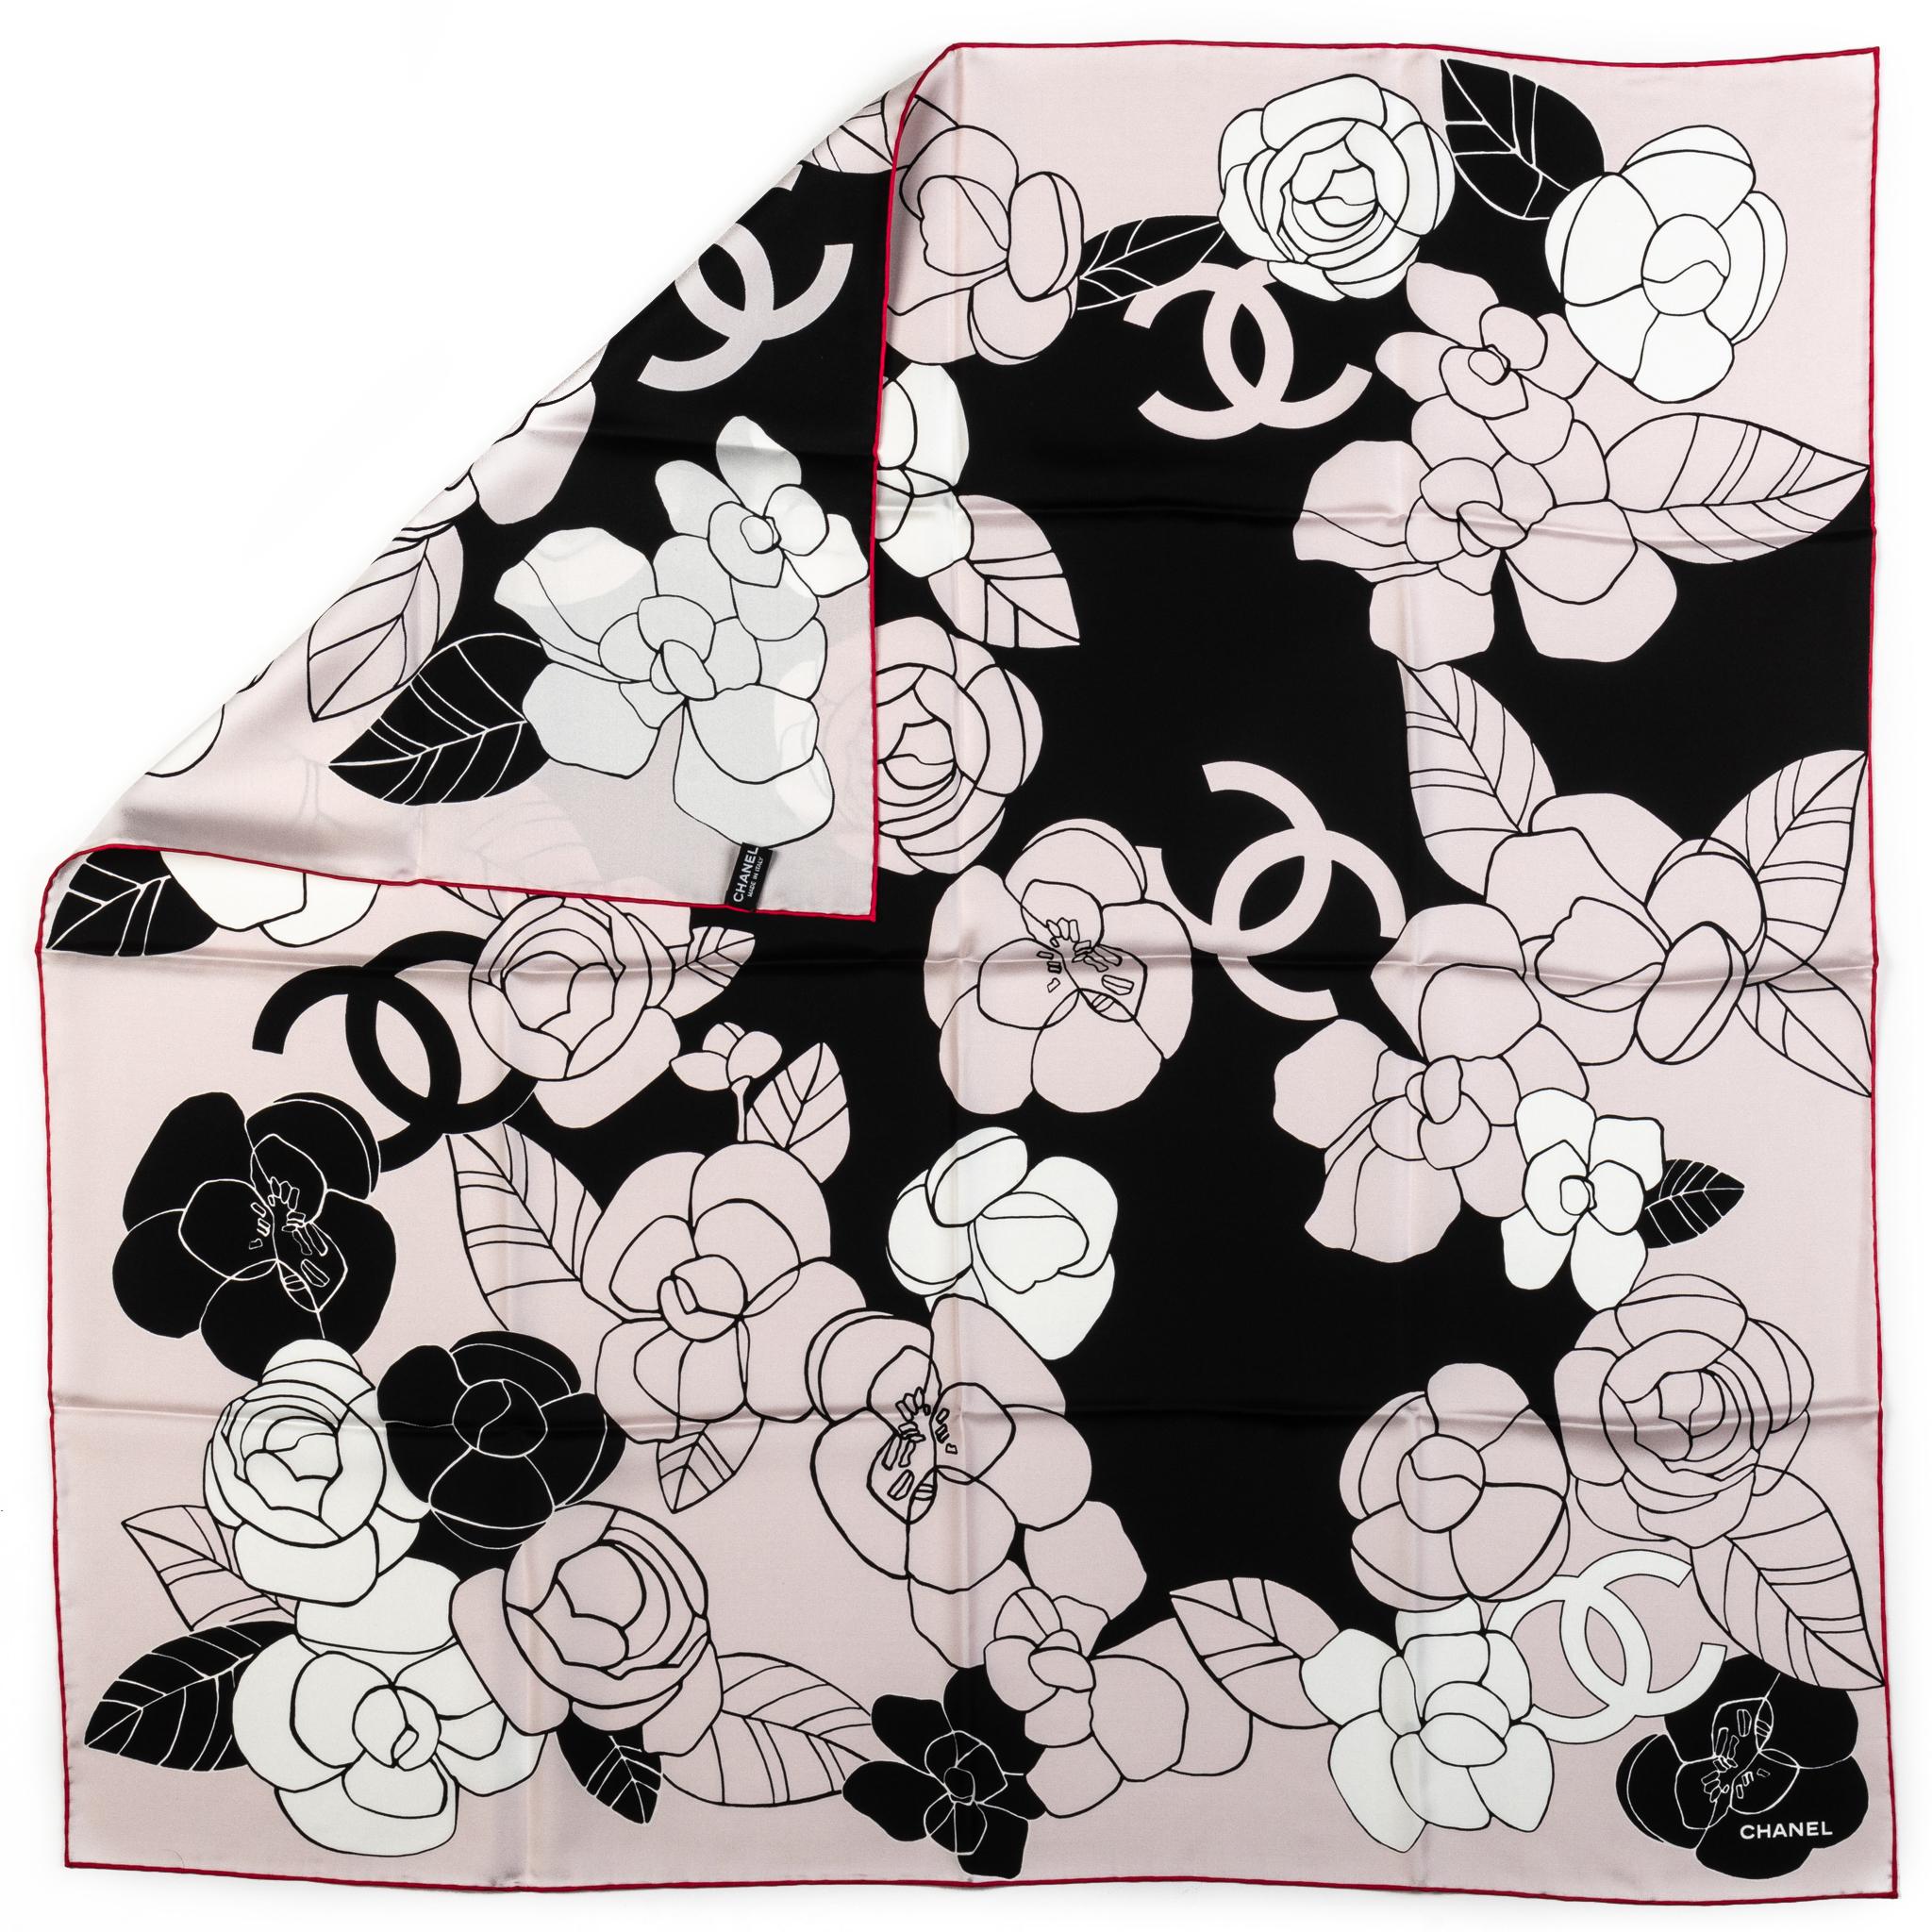 Chanel brand new camellias design 100% silk scarf in cream and black combination . Bords roulés à la main. Étiquette d'entretien.